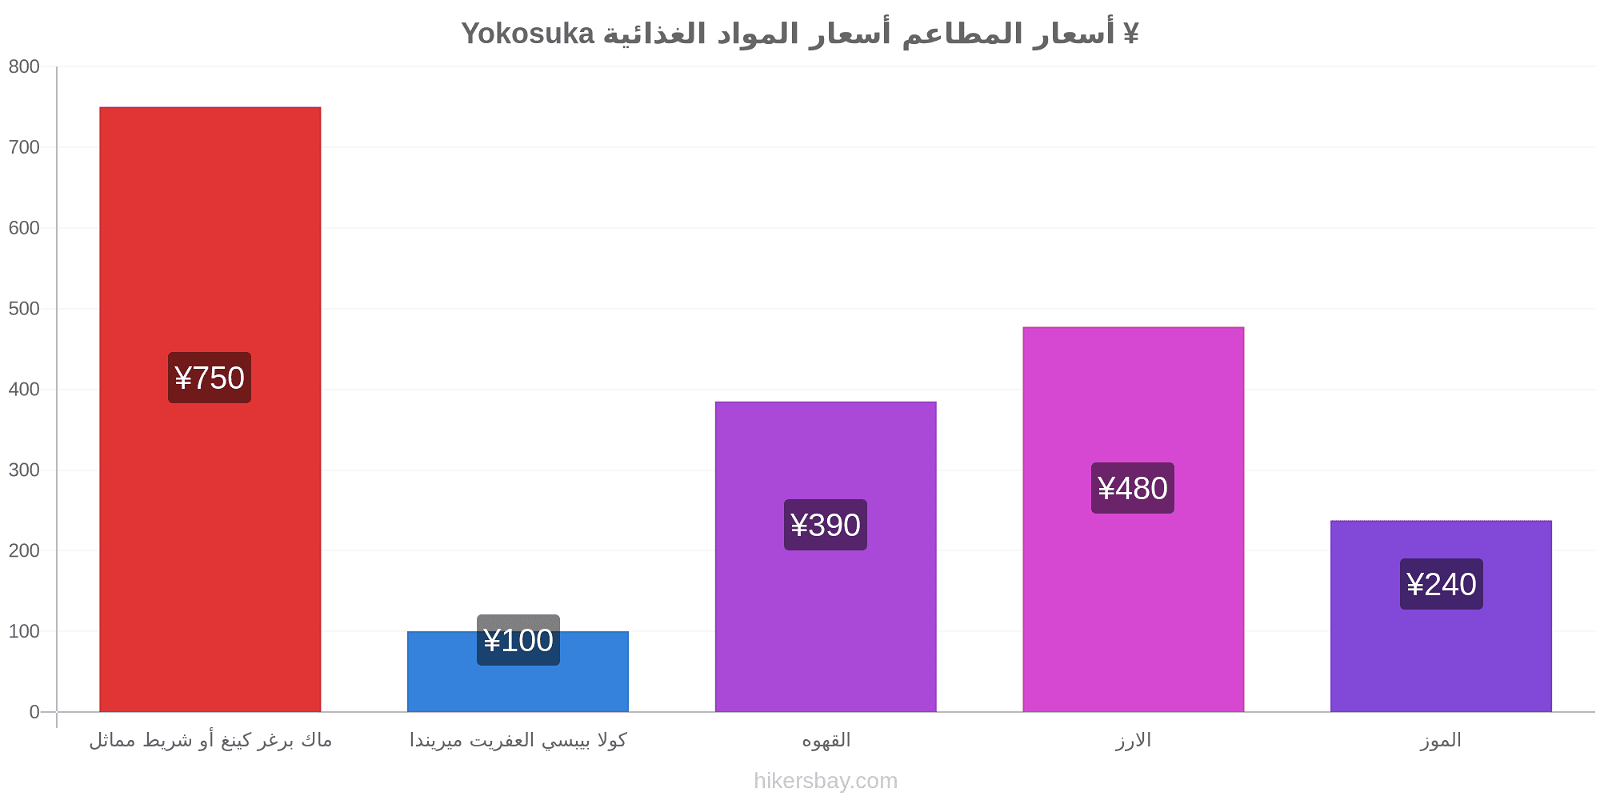 Yokosuka تغييرات الأسعار hikersbay.com